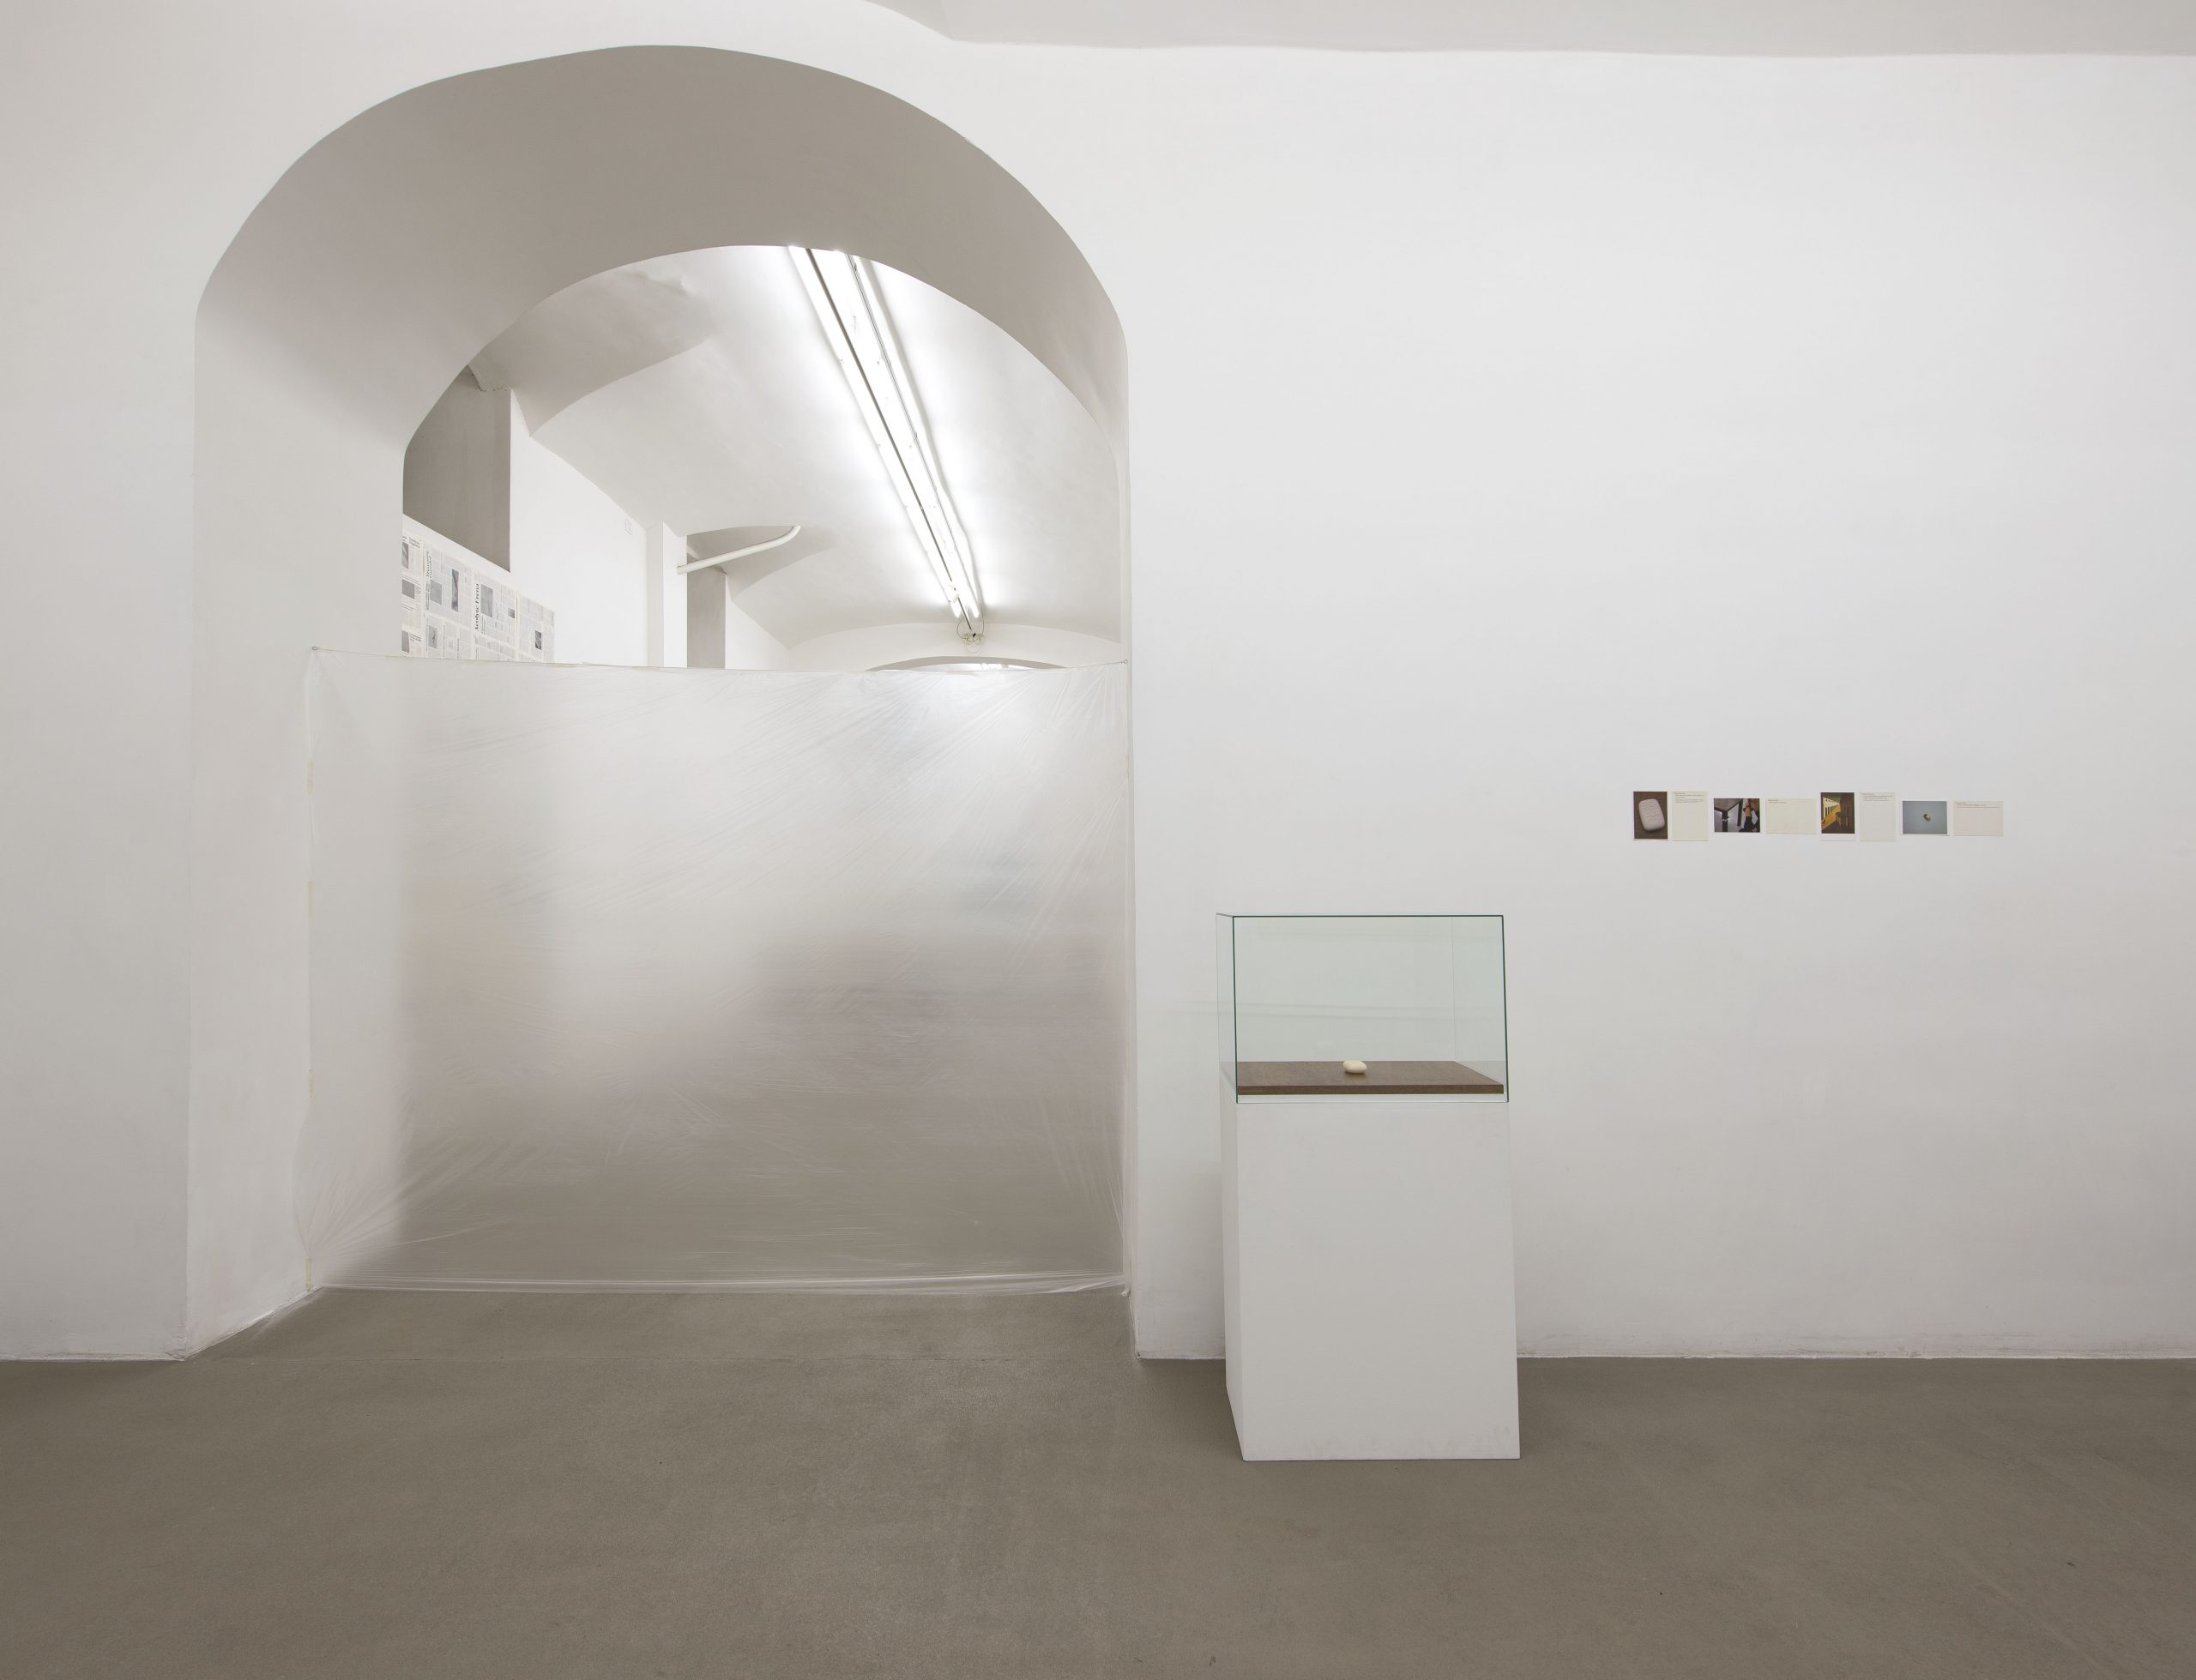 Roma Publications 1998 – 2014. Installation view at Fondazione Giuliani, photo by Giorgio Benni